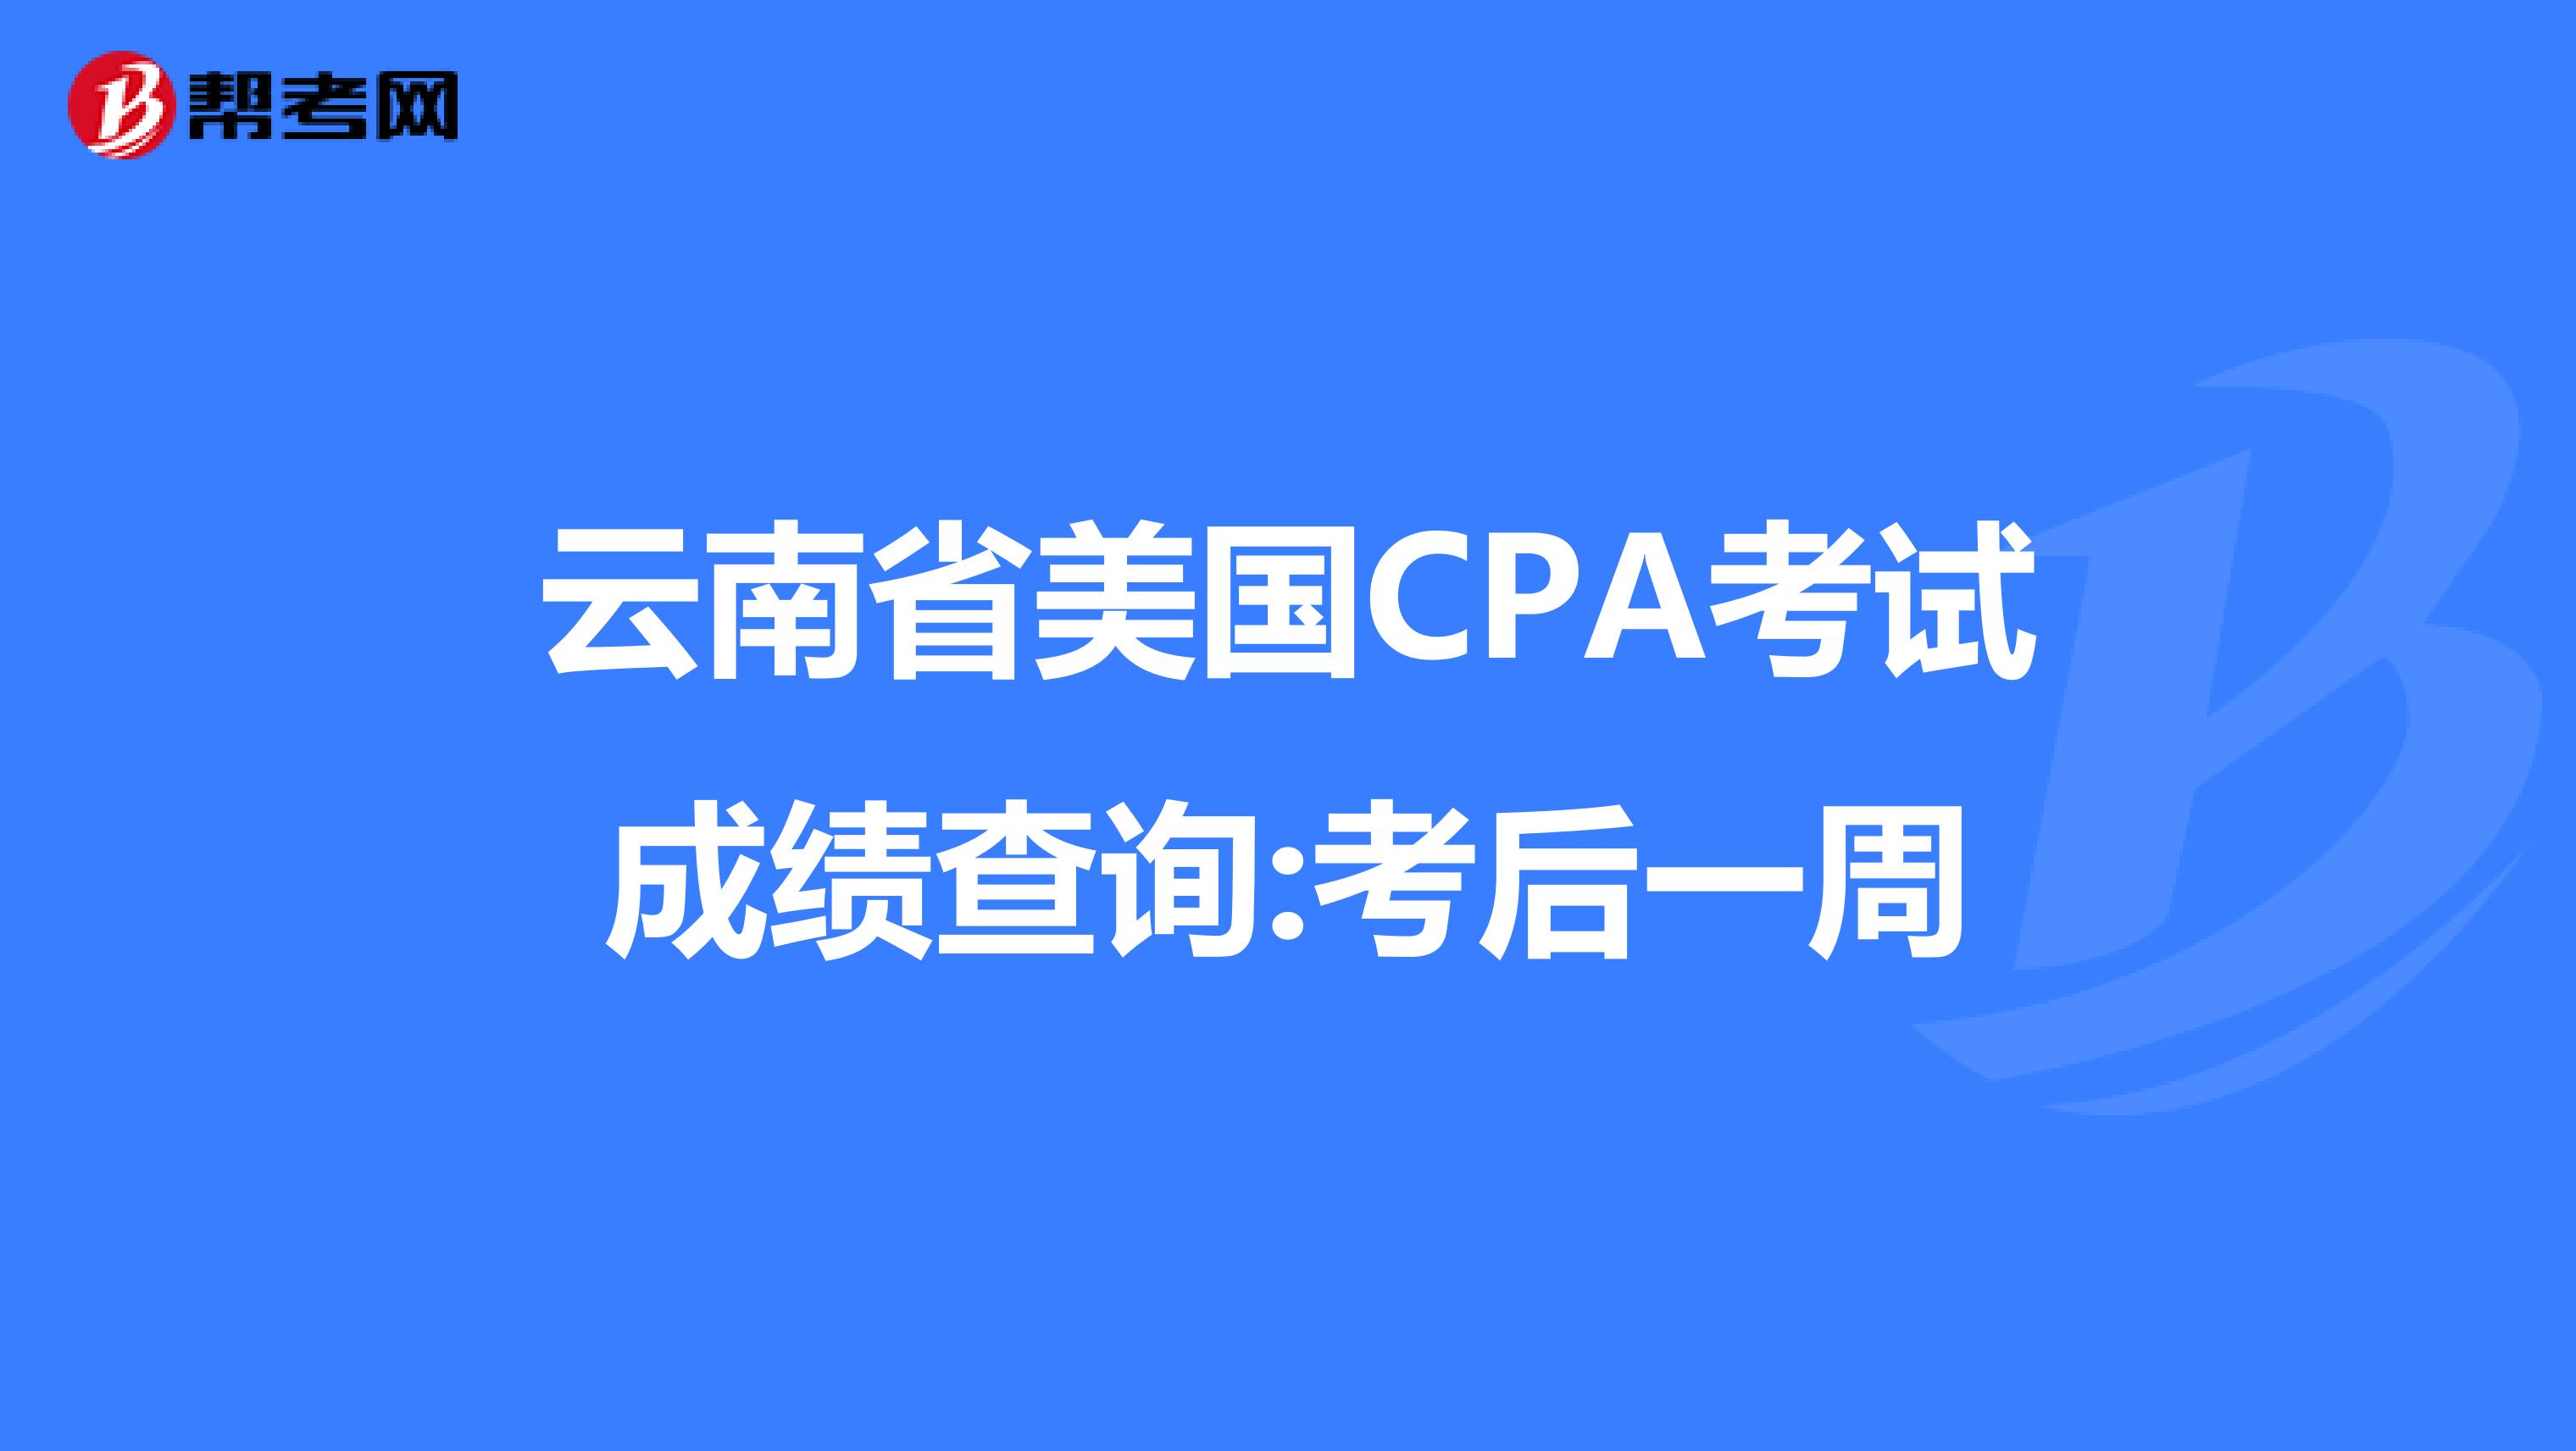 云南省美国CPA考试成绩查询:考后一周